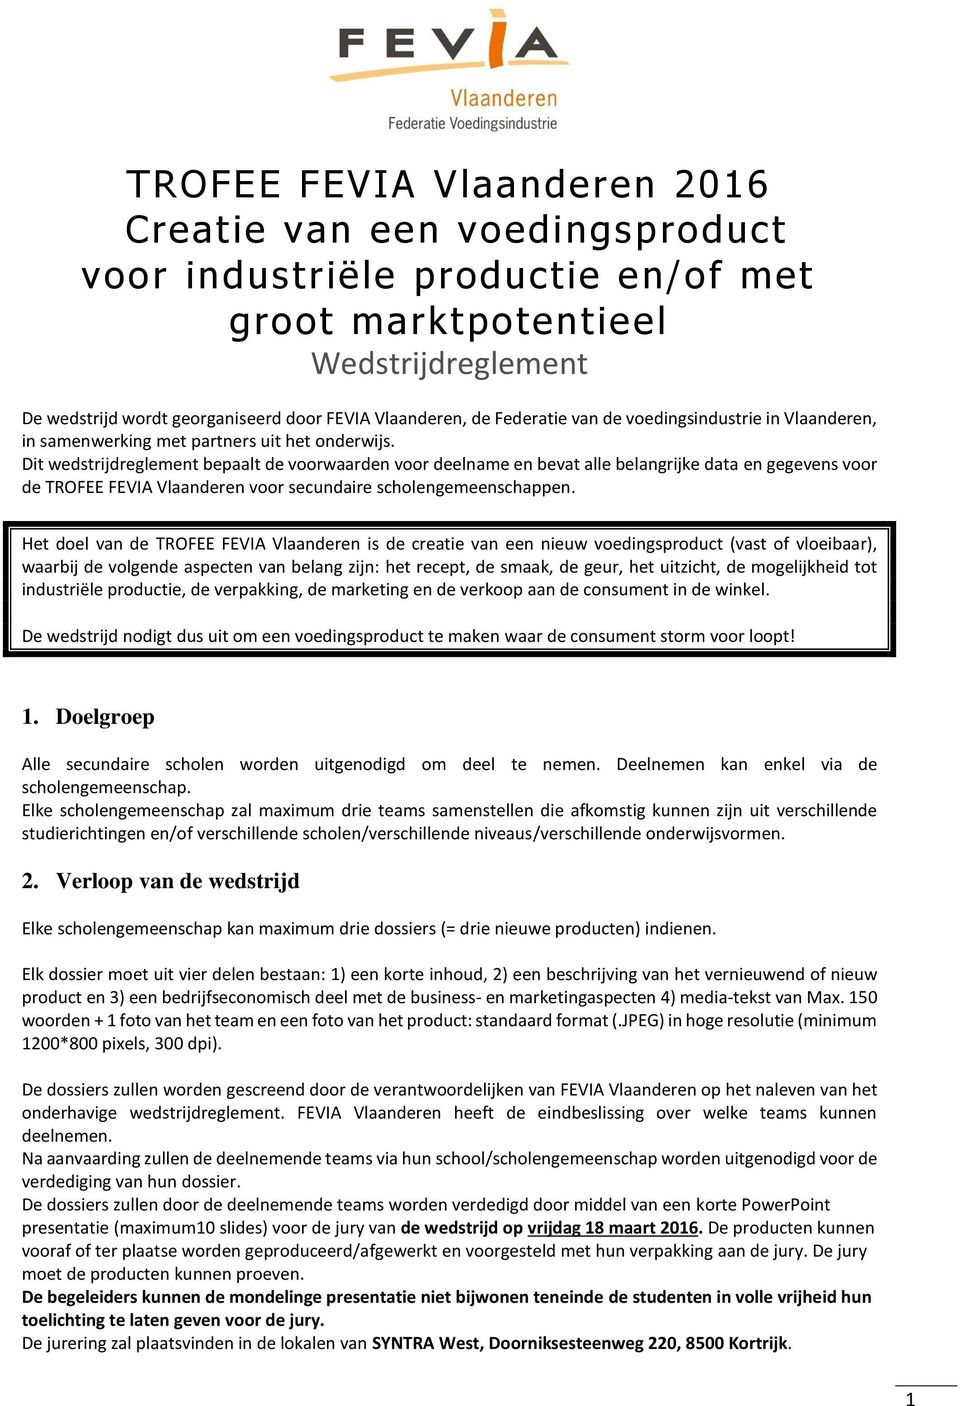 Dit wedstrijdreglement bepaalt de voorwaarden voor deelname en bevat alle belangrijke data en gegevens voor de TROFEE FEVIA Vlaanderen voor secundaire scholengemeenschappen.